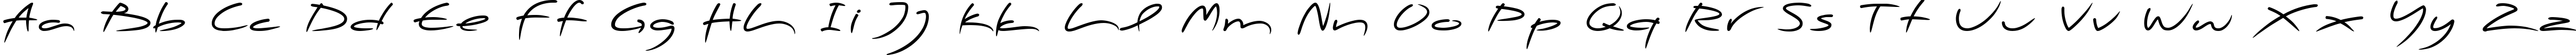 Пример написания английского алфавита шрифтом PFScandalPro-DisplayBold